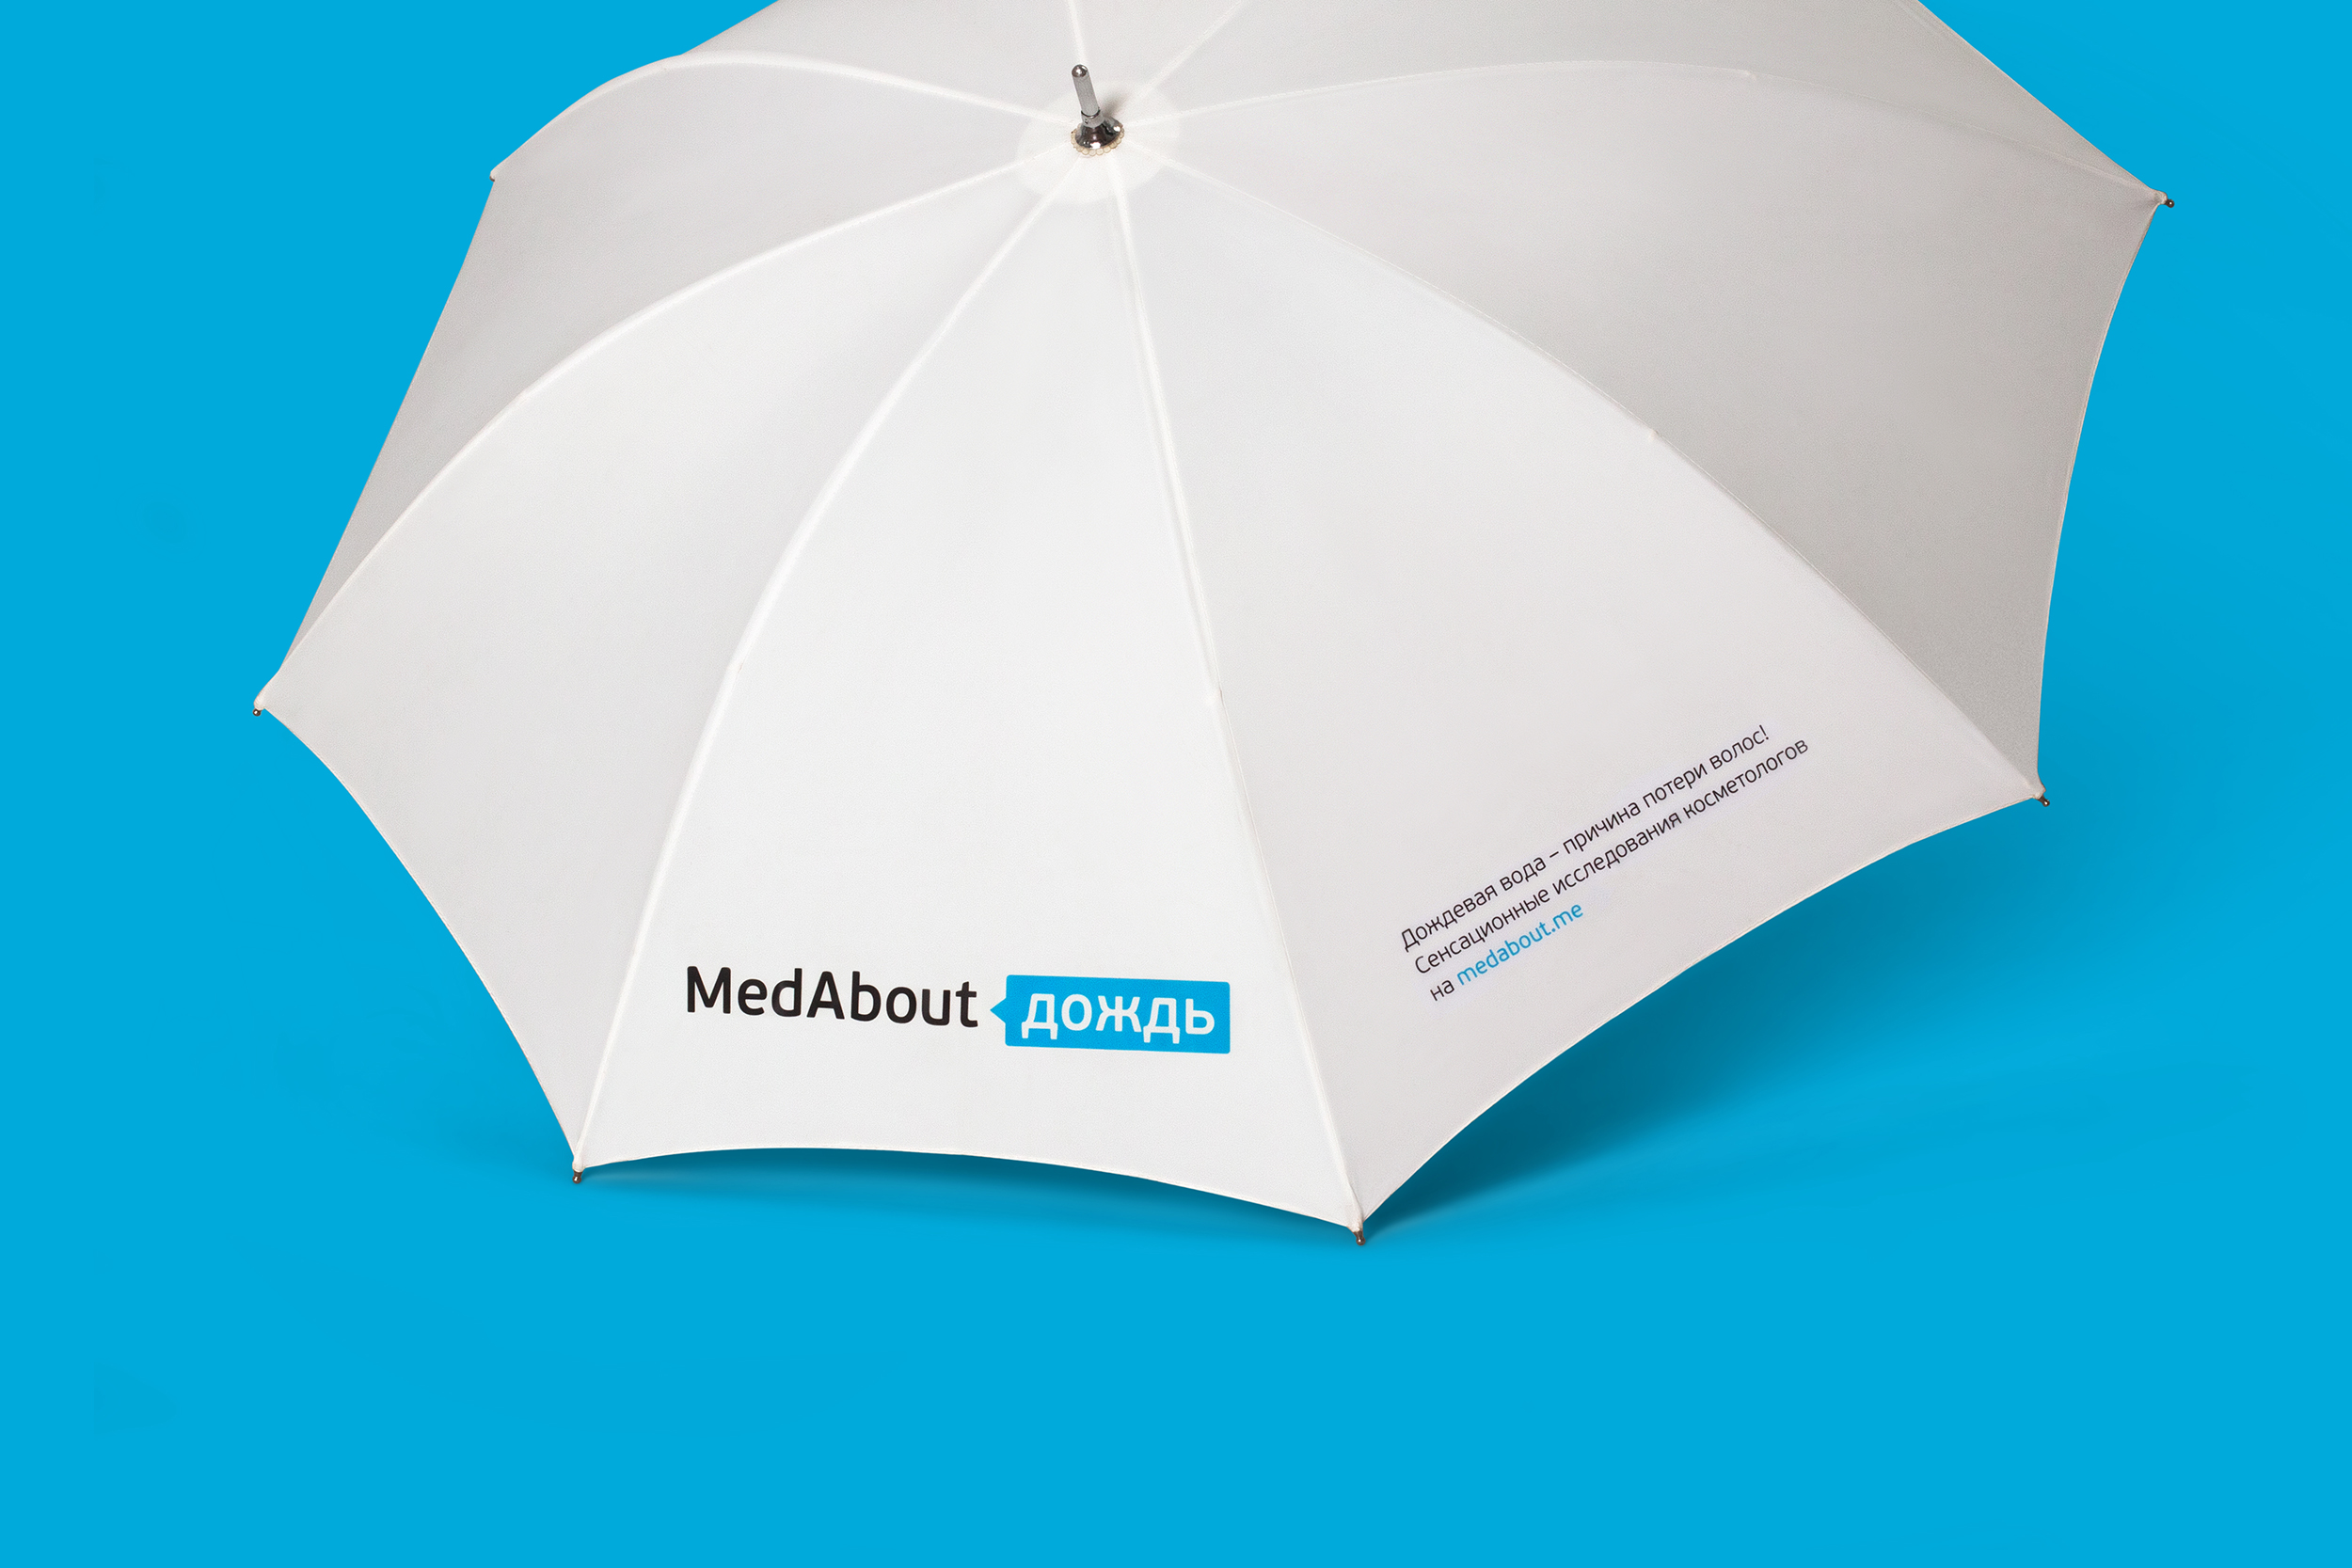 Коммуникационная стратегия, нейминг и айдентика для медицинского портала MedAbout.me